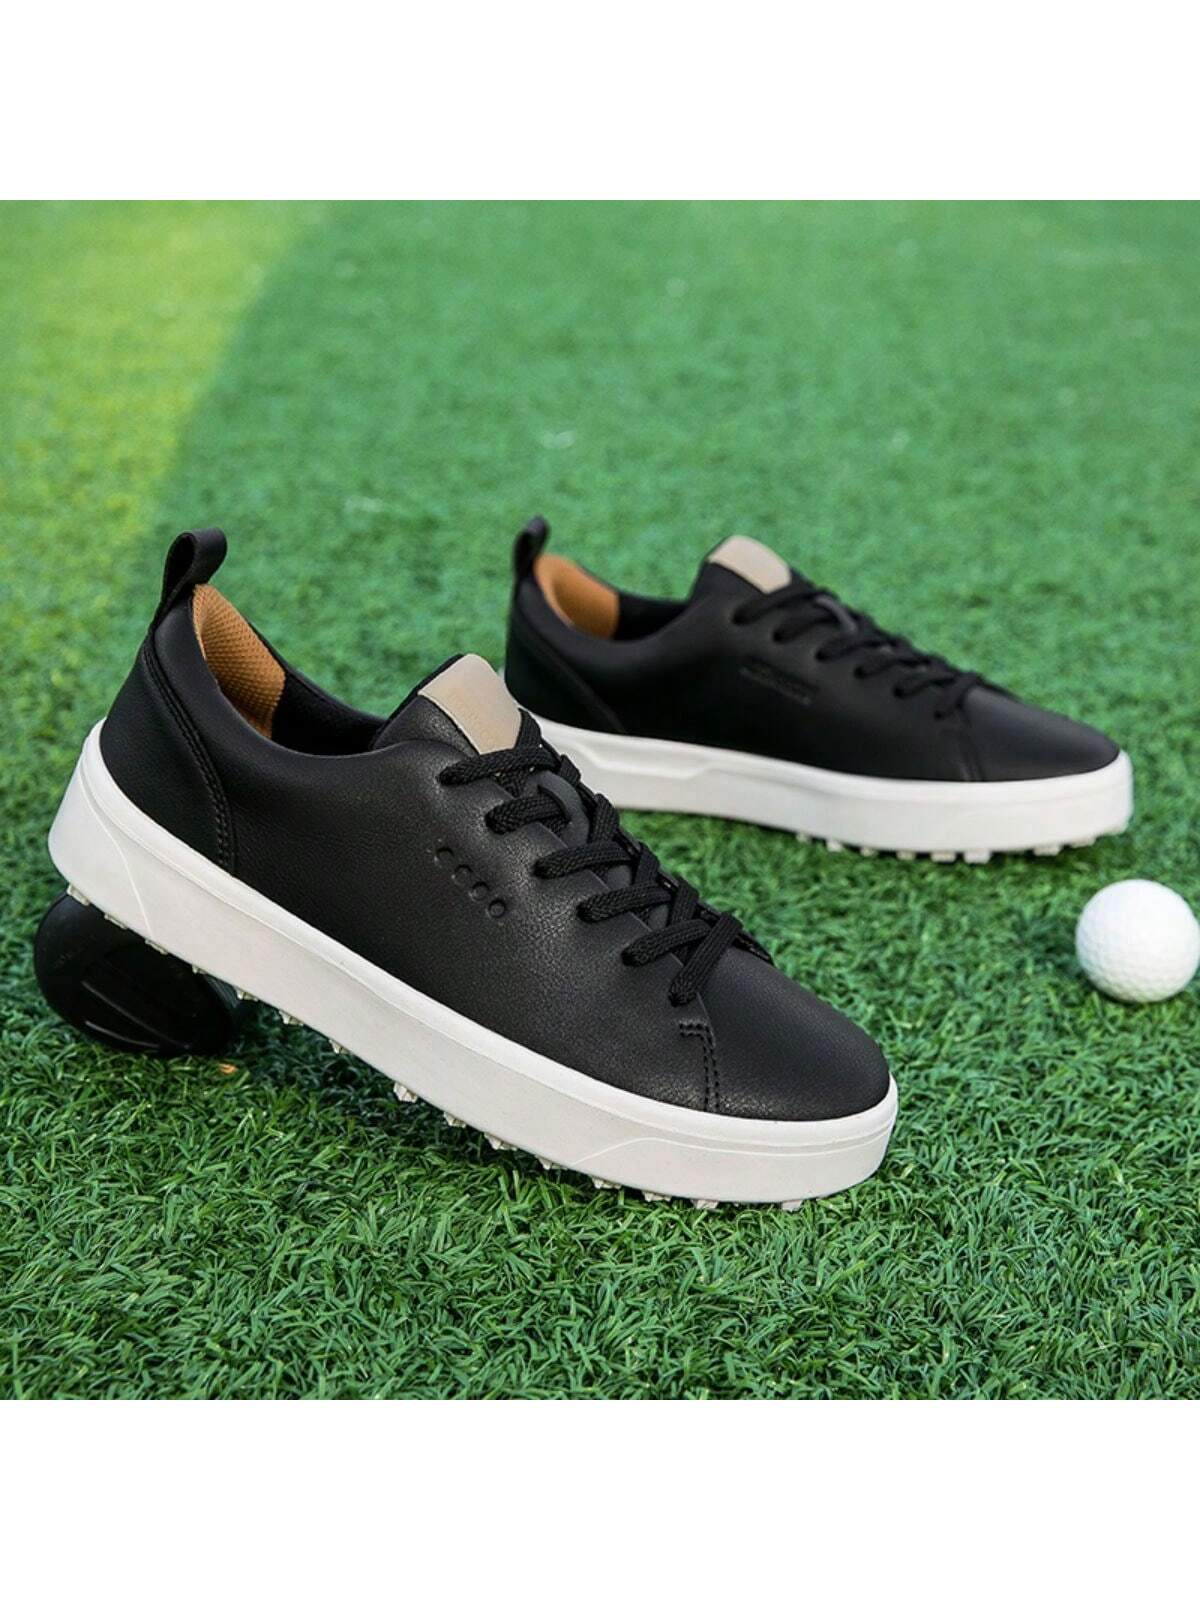 Мужские туфли для гольфа на открытом воздухе с профессиональной противоскользящей подошвой, черный мужские повседневные туфли для скейтбординга с высоким берцем и противоскользящей подошвой серый